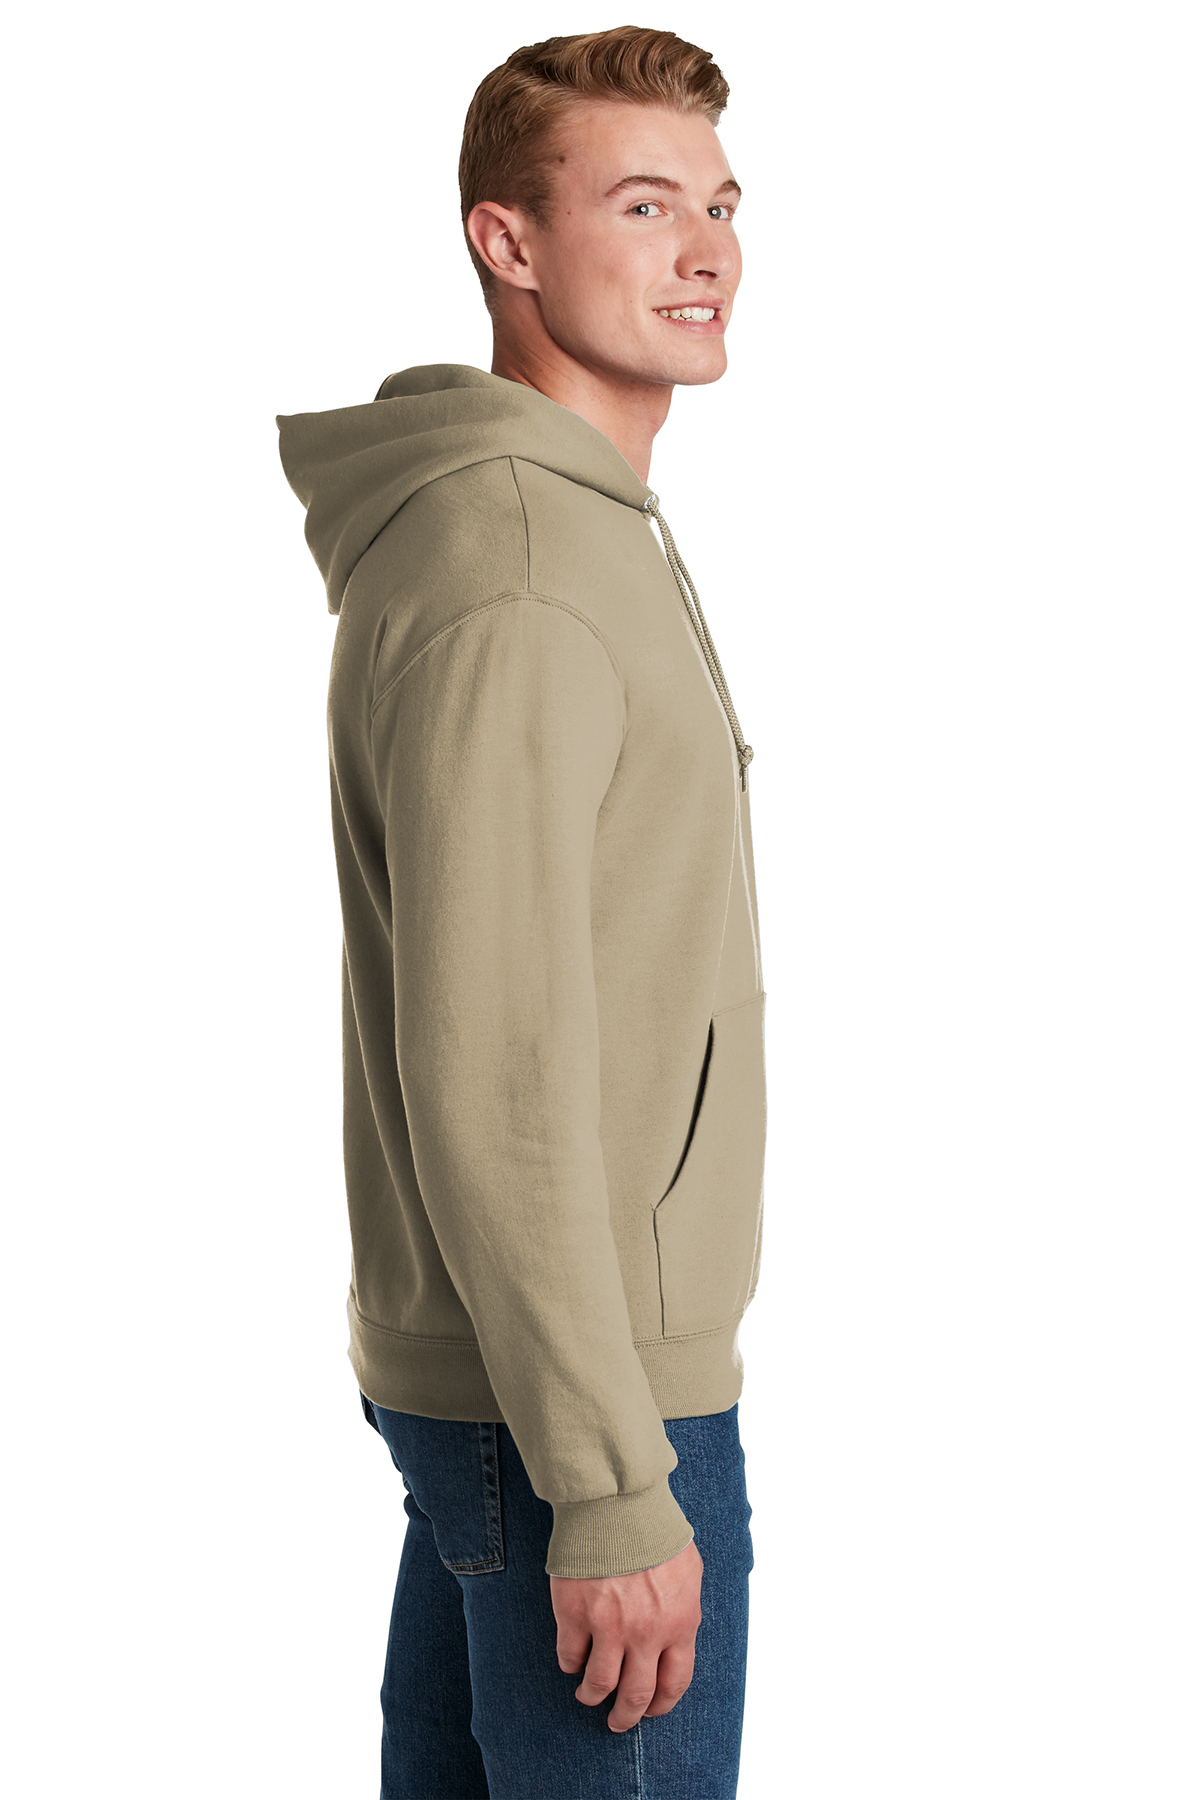 Jerzees - NuBlend Pullover Hooded Sweatshirt | SanMar | Product